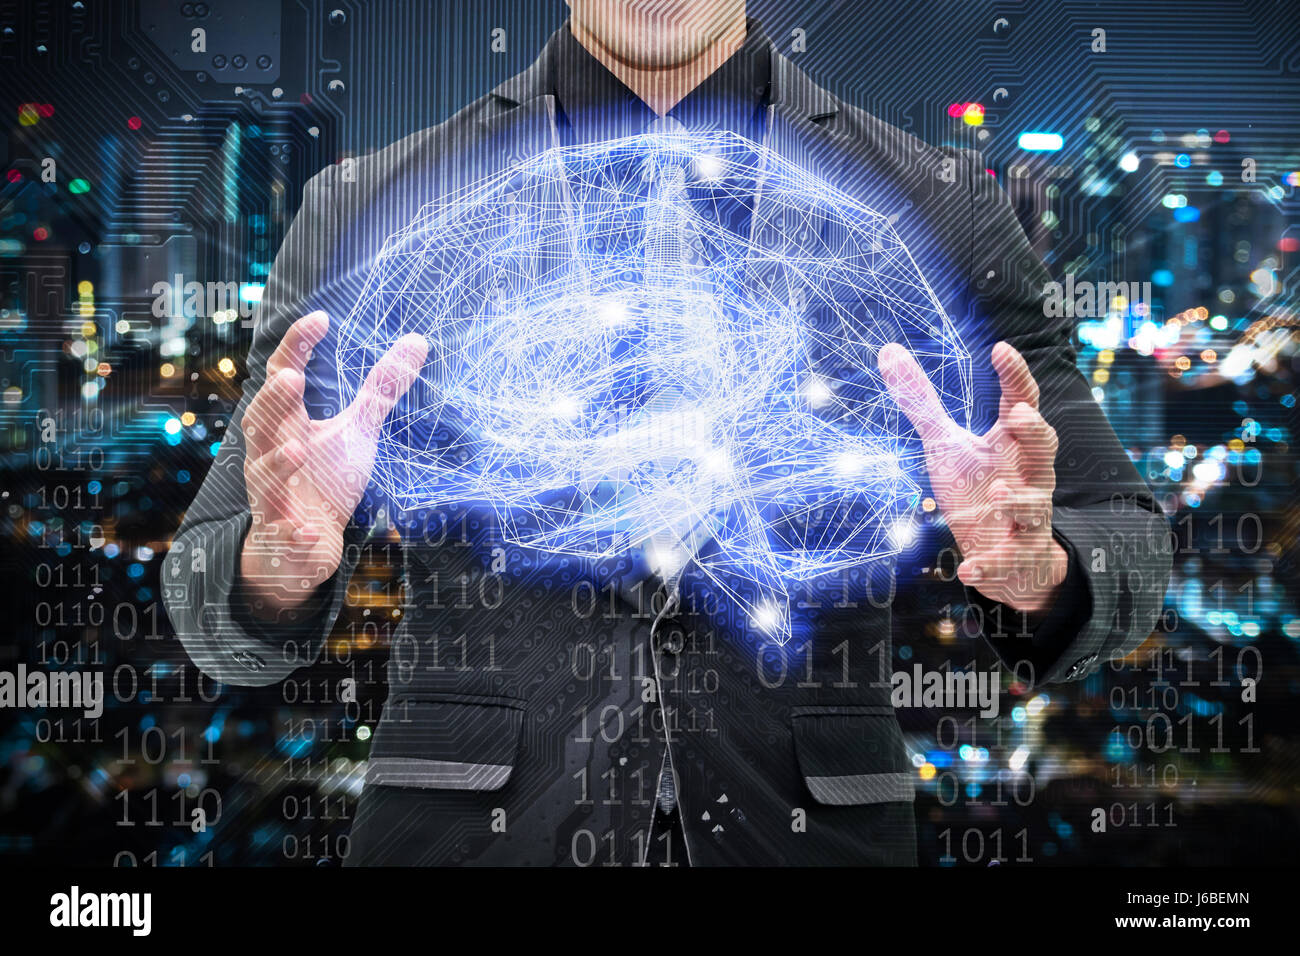 Maschinelles lernen, künstliche Intelligenz, KI, Tiefe lernen und Zukunftskonzept. Mann Anzug Holding Wireframe Gehirn verbinden mit elektronischen Schaltung ein Stockfoto